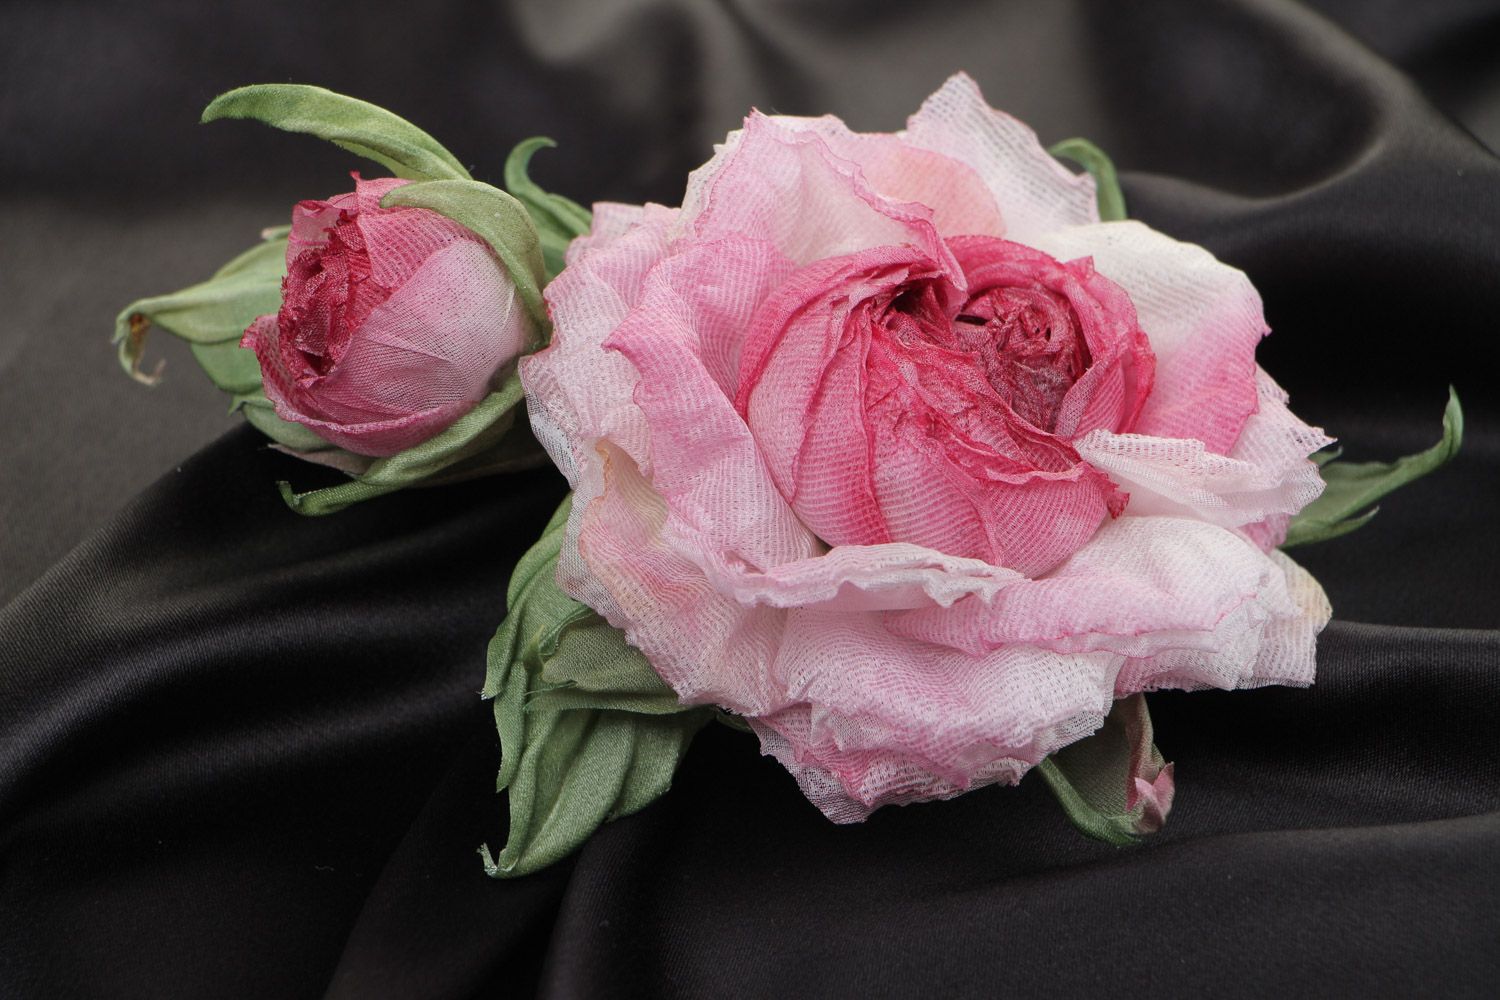 Massive exklusive Rose Brosche aus Stoff für elegante Looks und schicke Damen foto 1